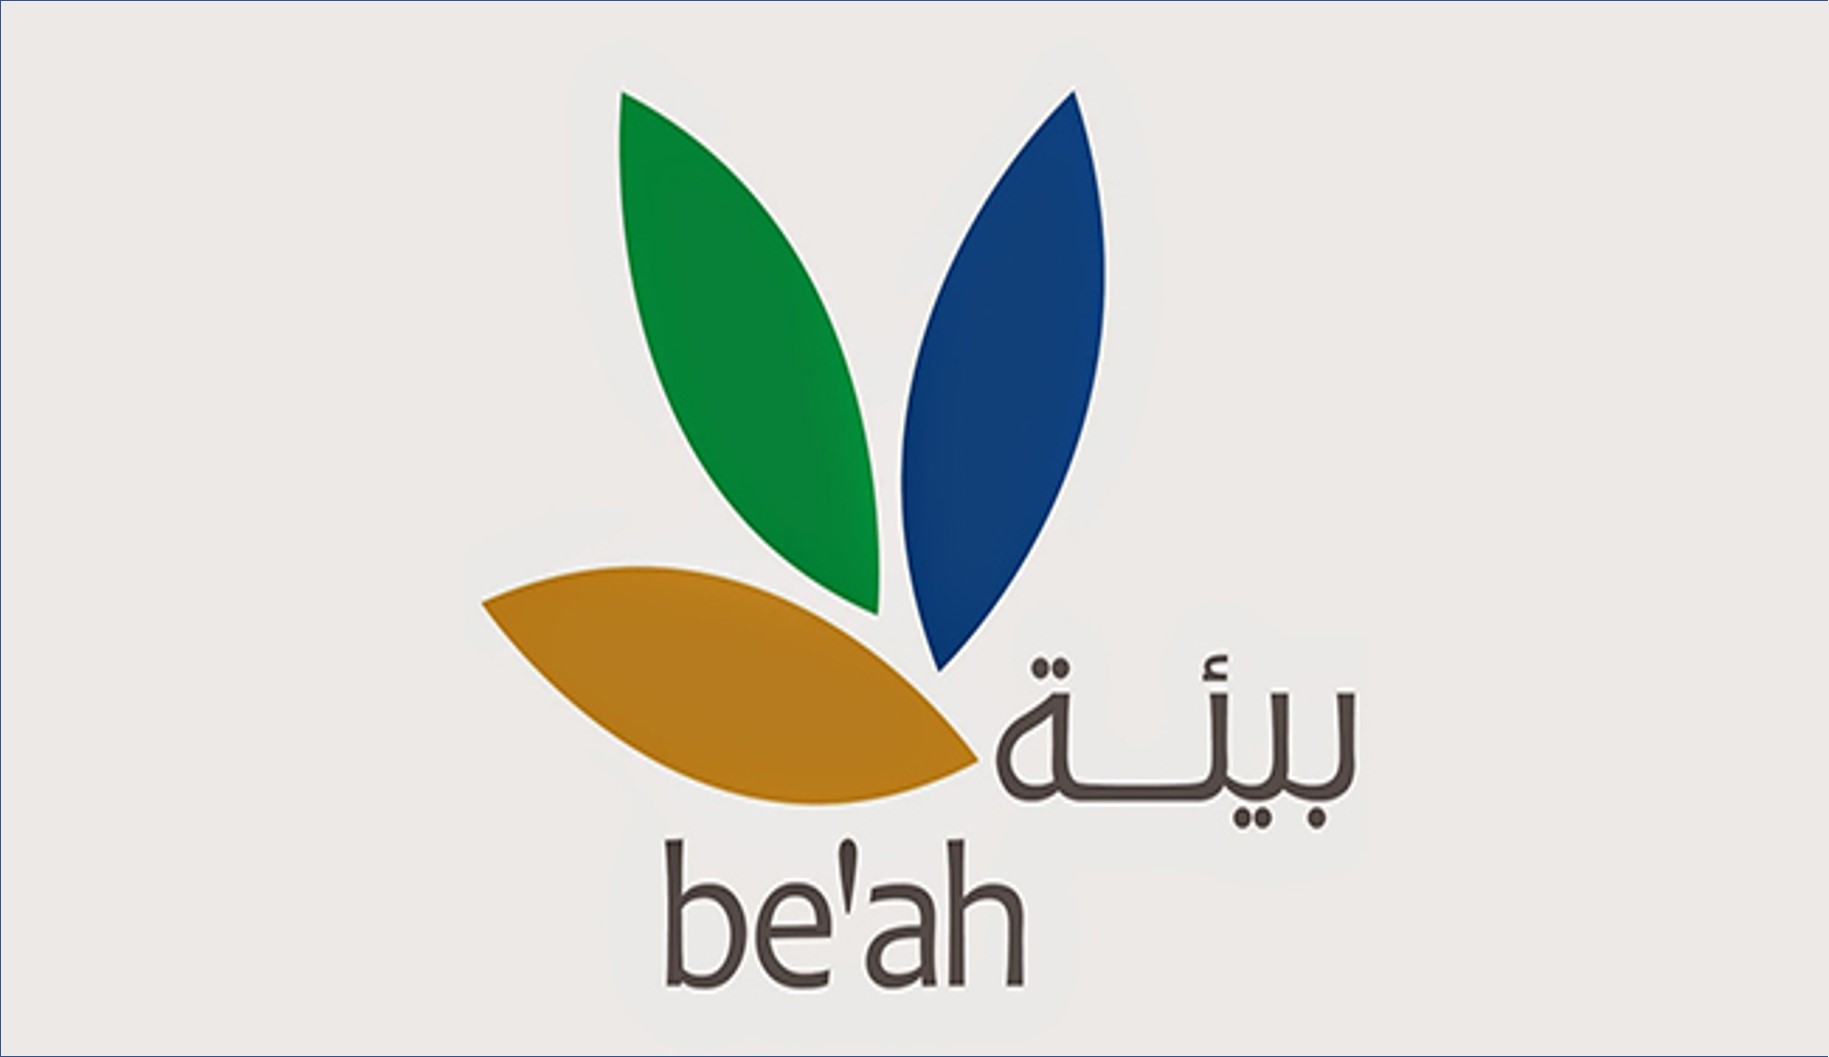 شركة بيئة بسلطنة عمان تعلن عن فرص وظيفية للعمانيين فقط